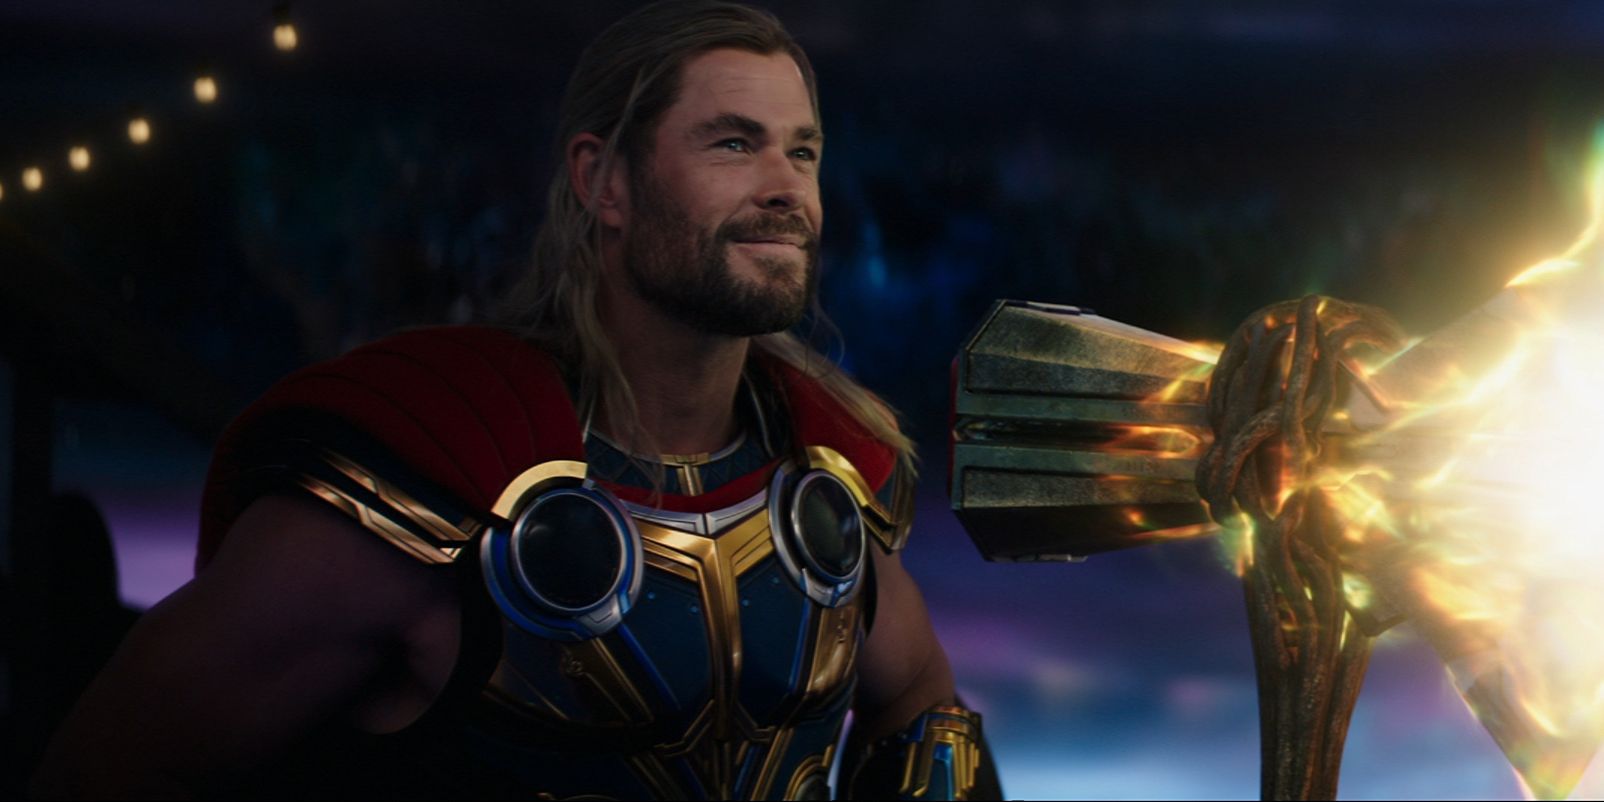 La nueva armadura de fase 4 de Thor sugiere que Gorr es incluso más poderoso que Hela